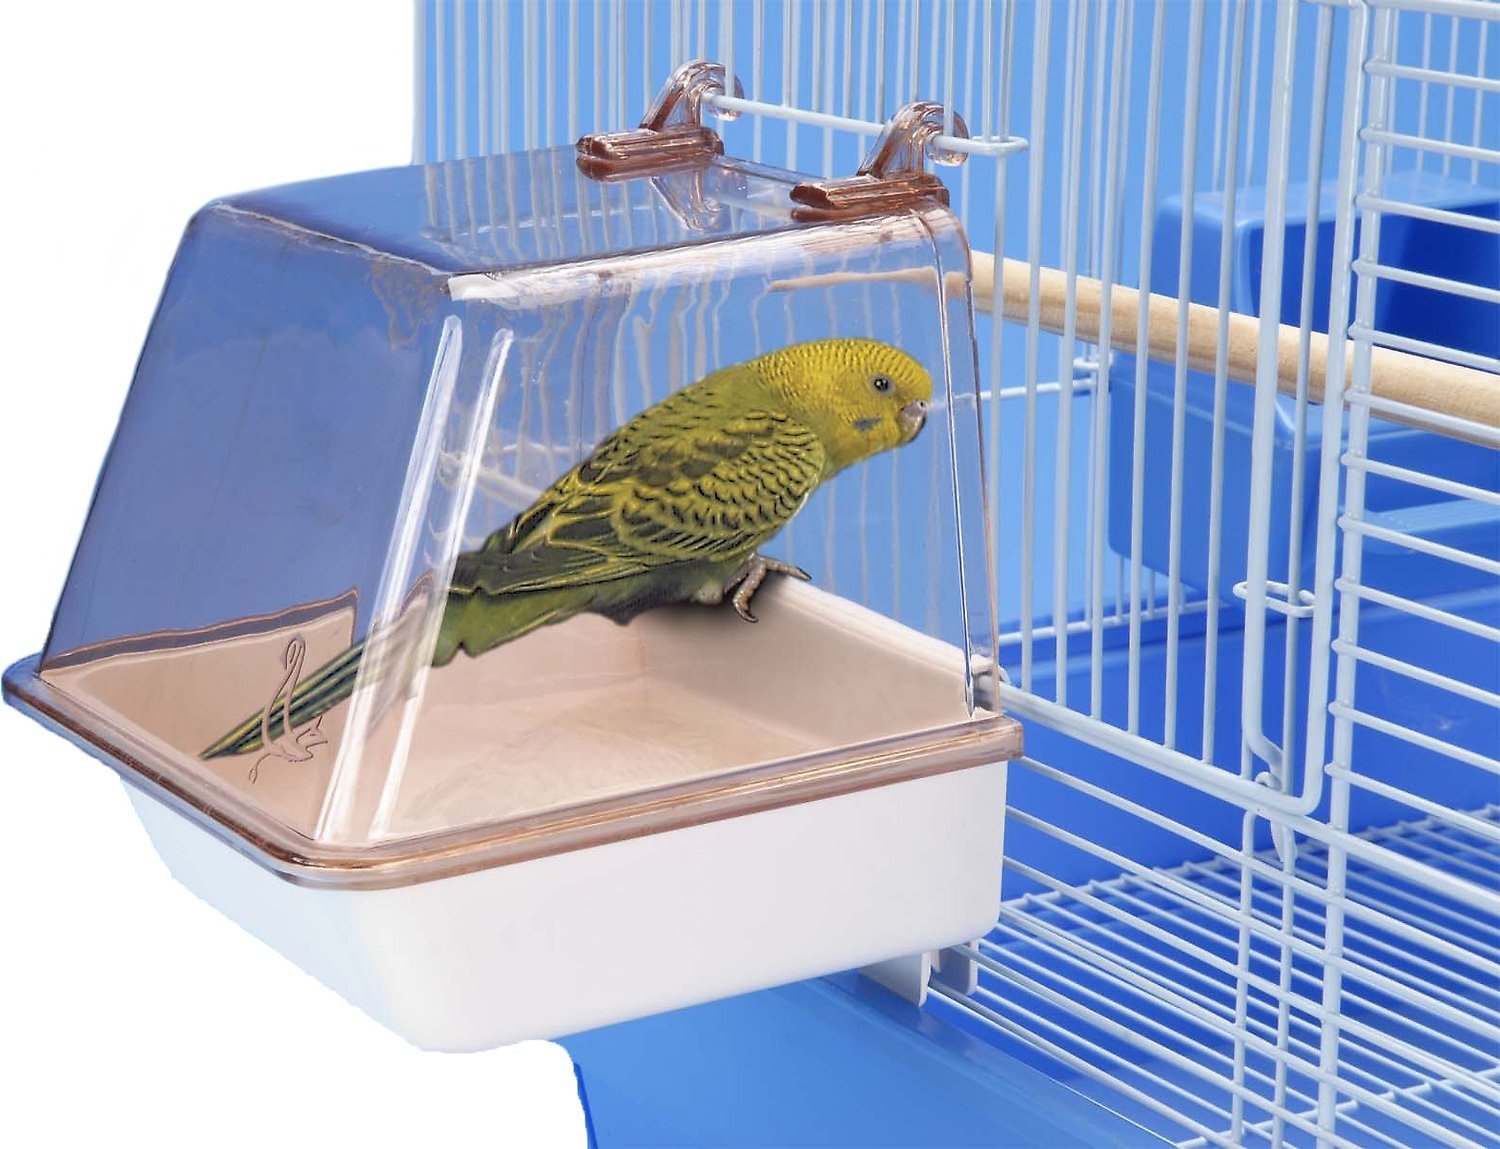 Ванночка для попугаев